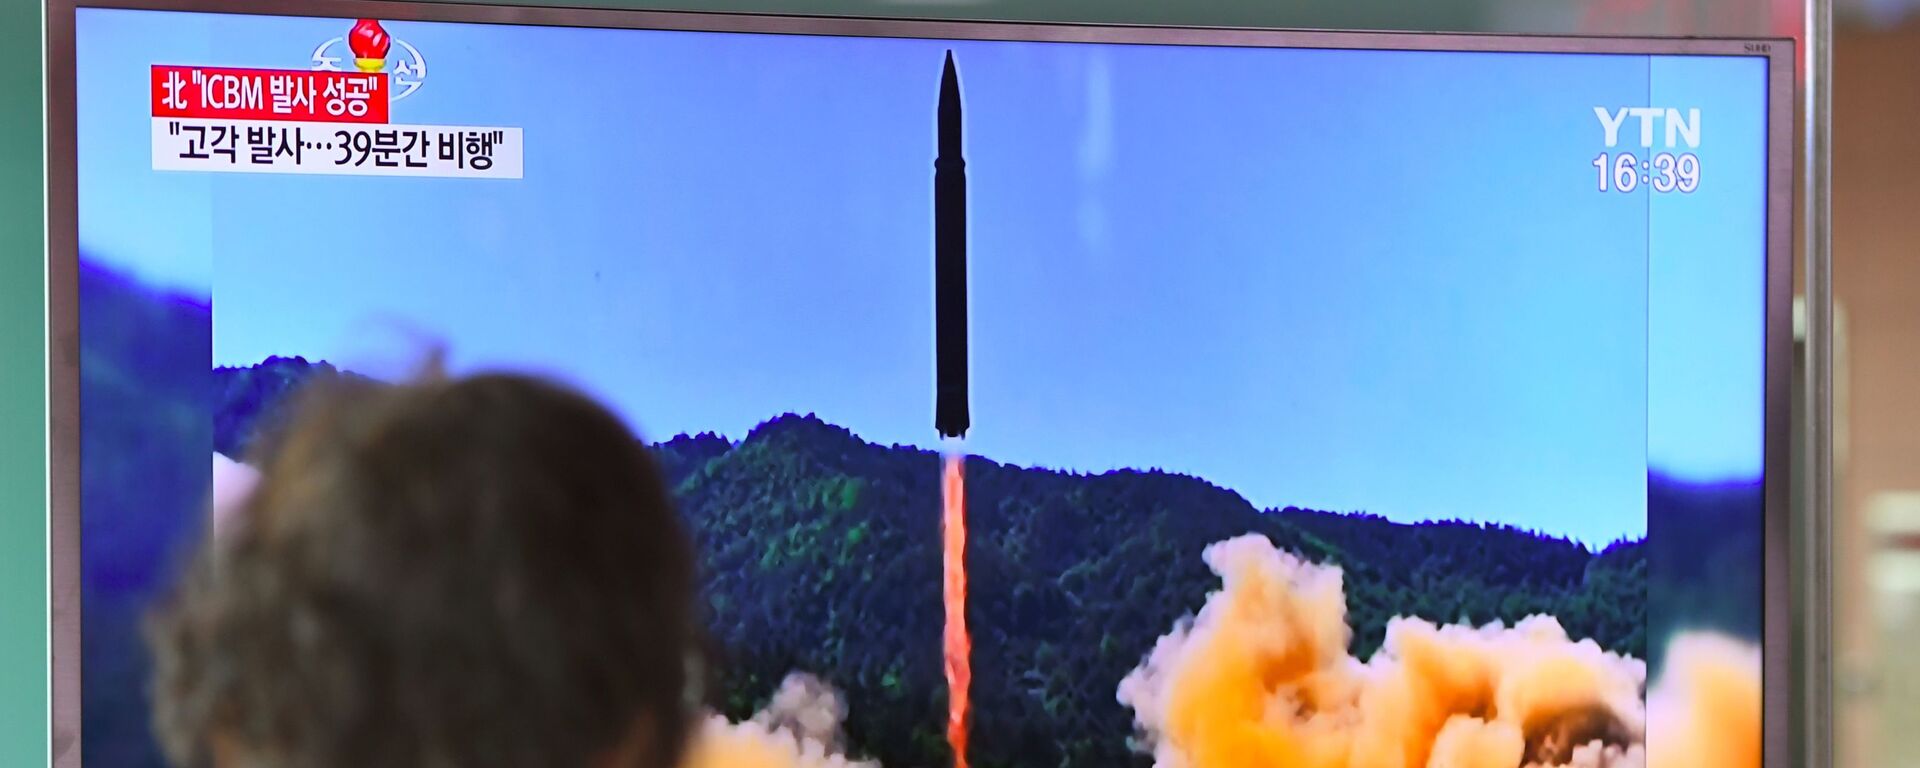 کره جنوبی از پرتاب موشک توسط کره شمالی ابراز نگرانی کرد - اسپوتنیک ایران  , 1920, 11.01.2022